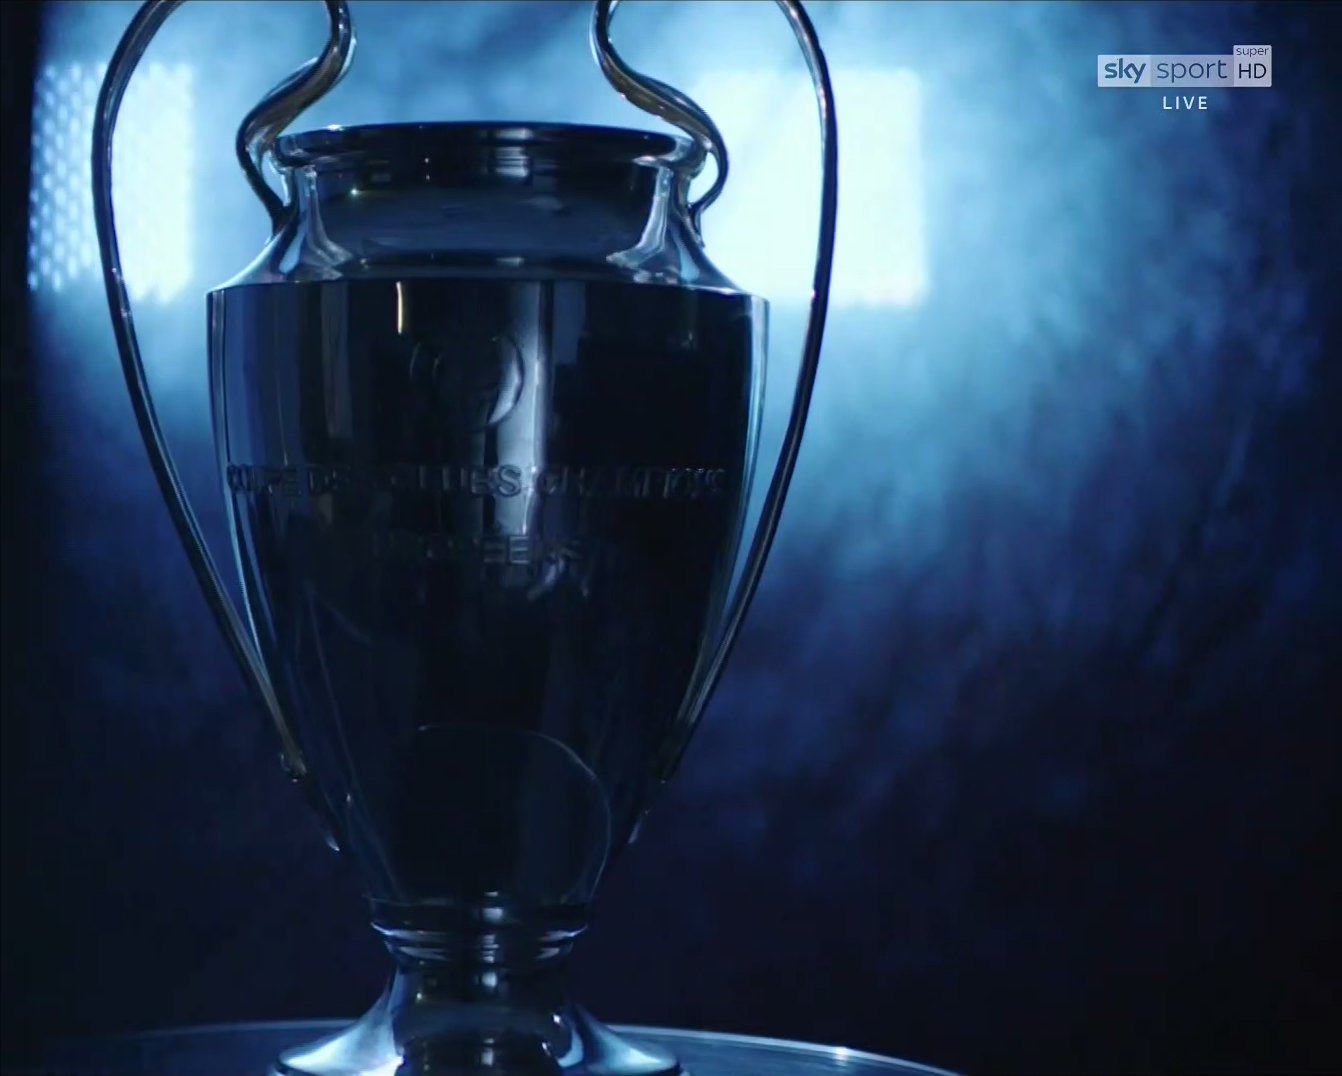 Sky Sport Champions Quarti Ritorno, Diretta Esclusiva | Palinsesto e Telecronisti